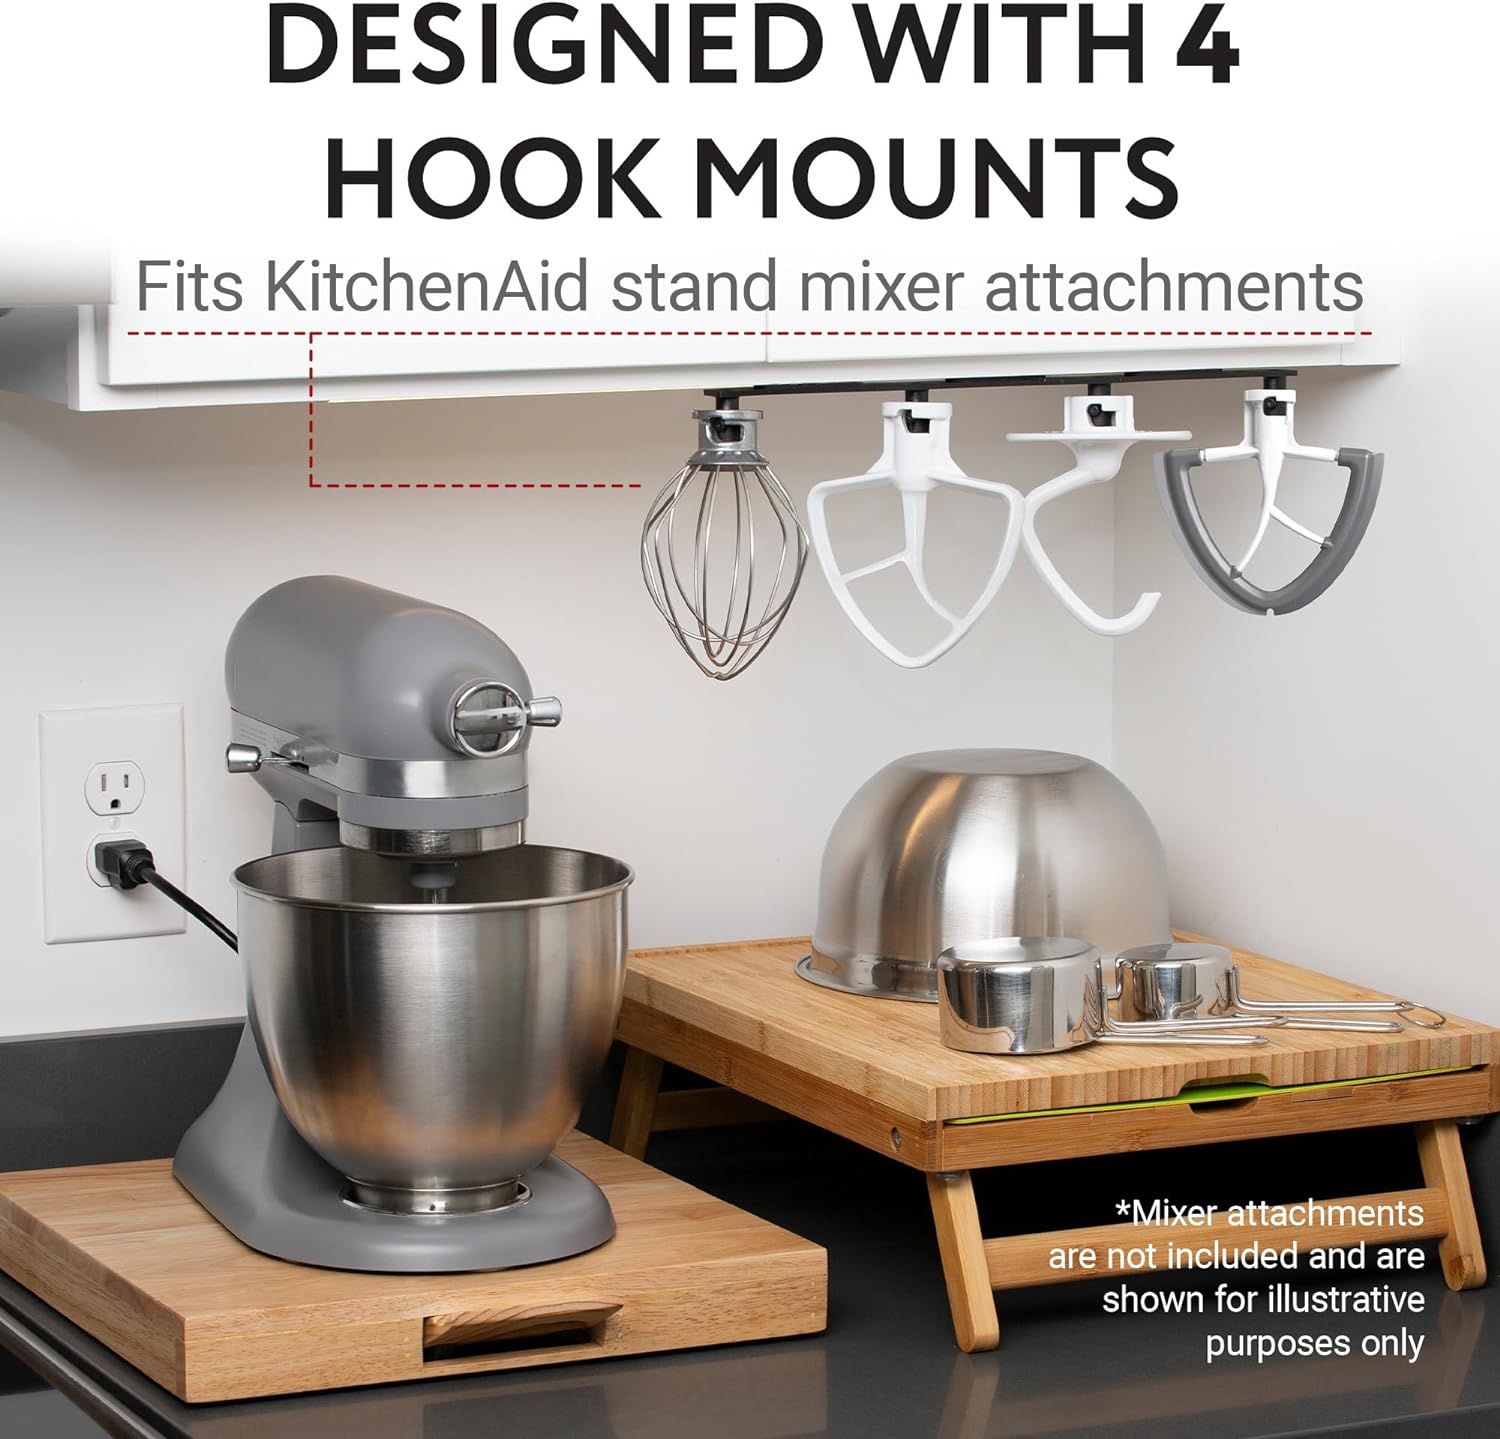 Impresa Stand Mixer Attachment Storage Organizer for KitchenAid Mixer Attachments - Organize Your Kitchen Appliances with the Impresa Stand Mixer Attachment Holder for Kitchen Aid Attachments